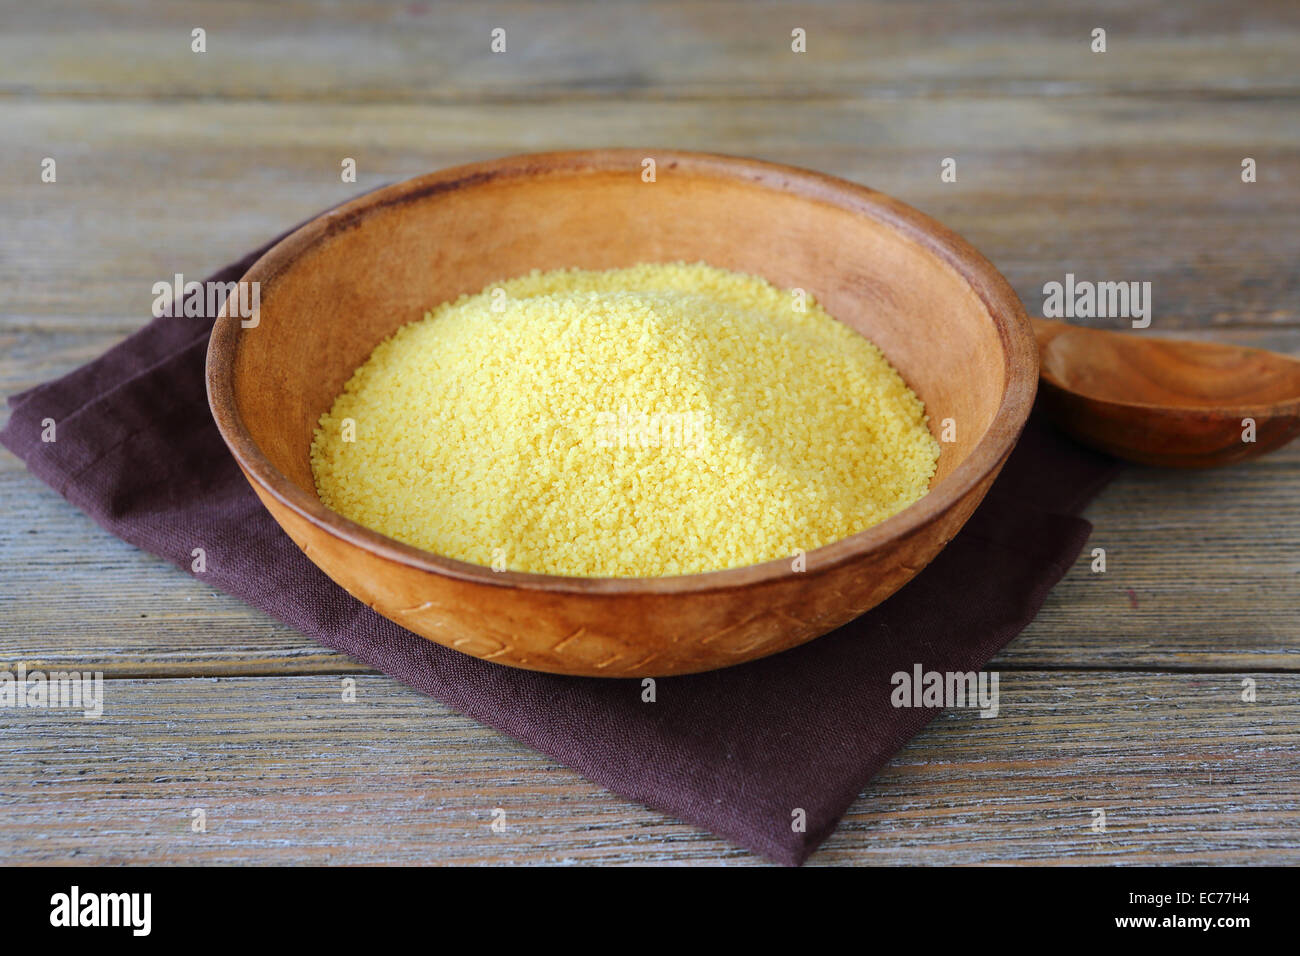 Couscous non cuits dans un bol d'argile sur des planches, arabe Banque D'Images